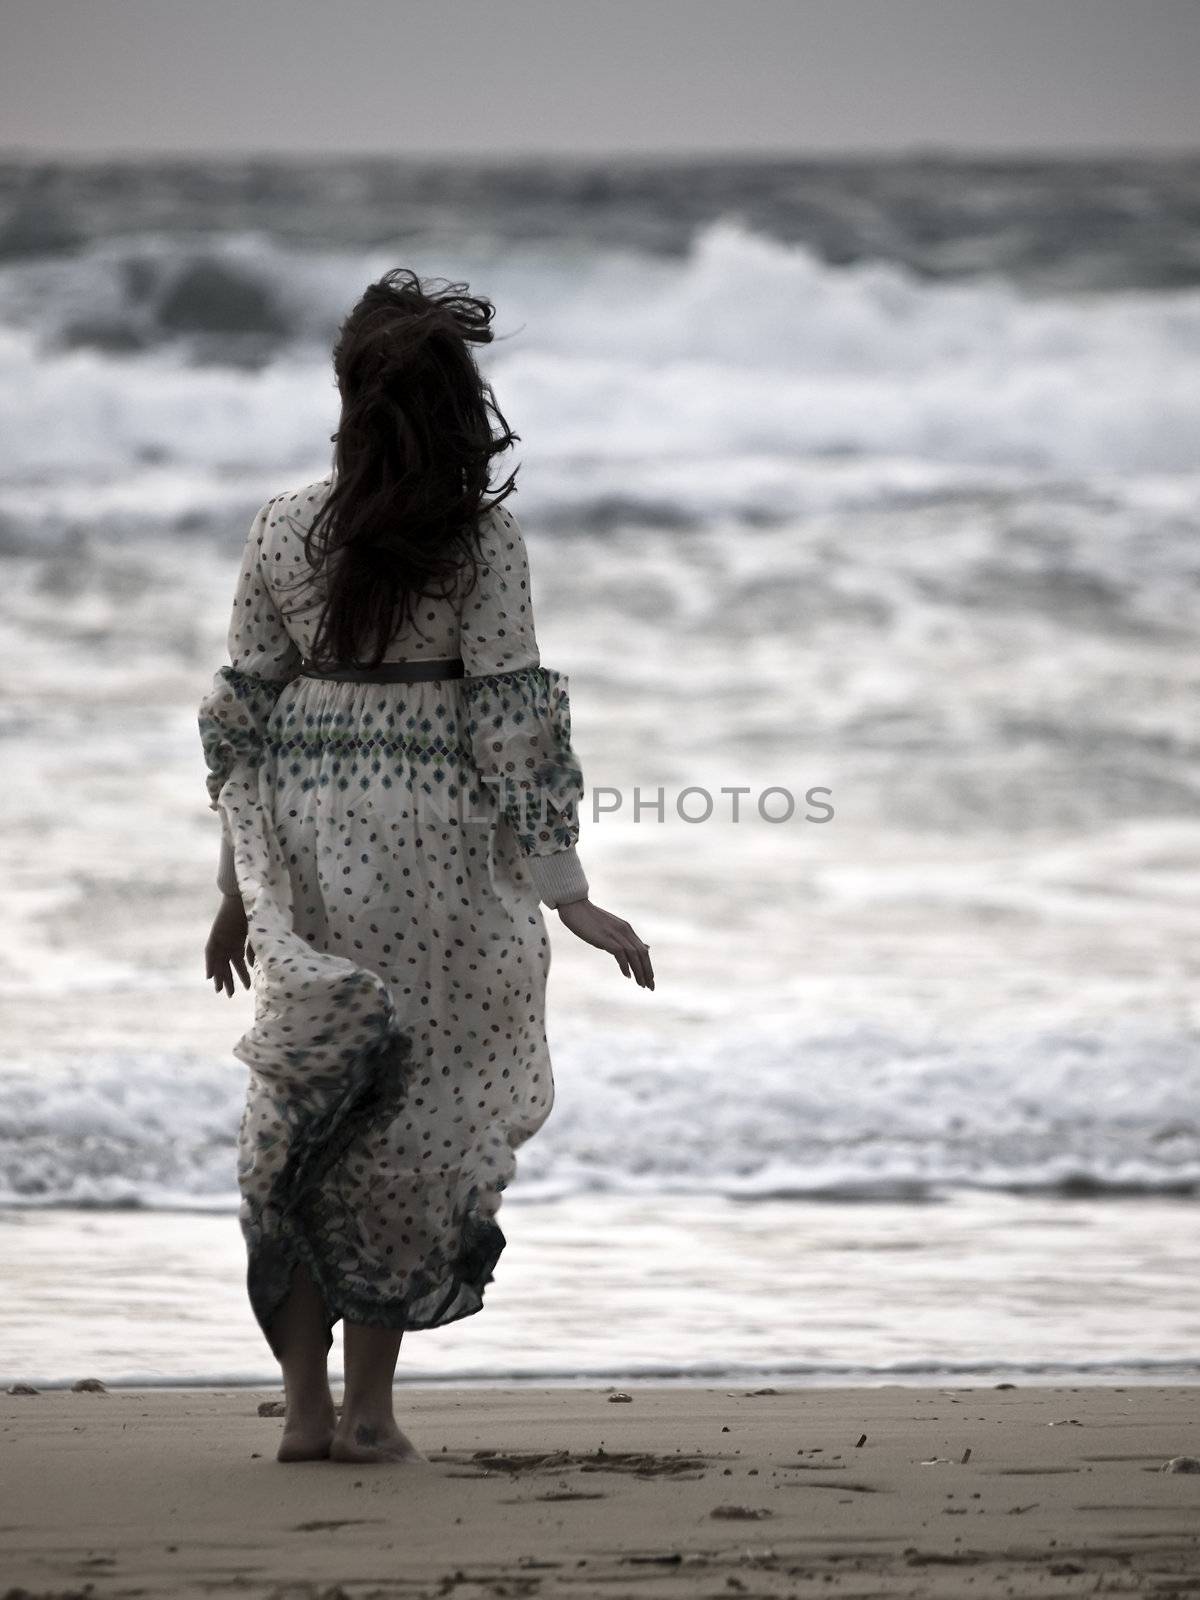 Lone woman walking along a beach in winter
Model: Elaine Saliba